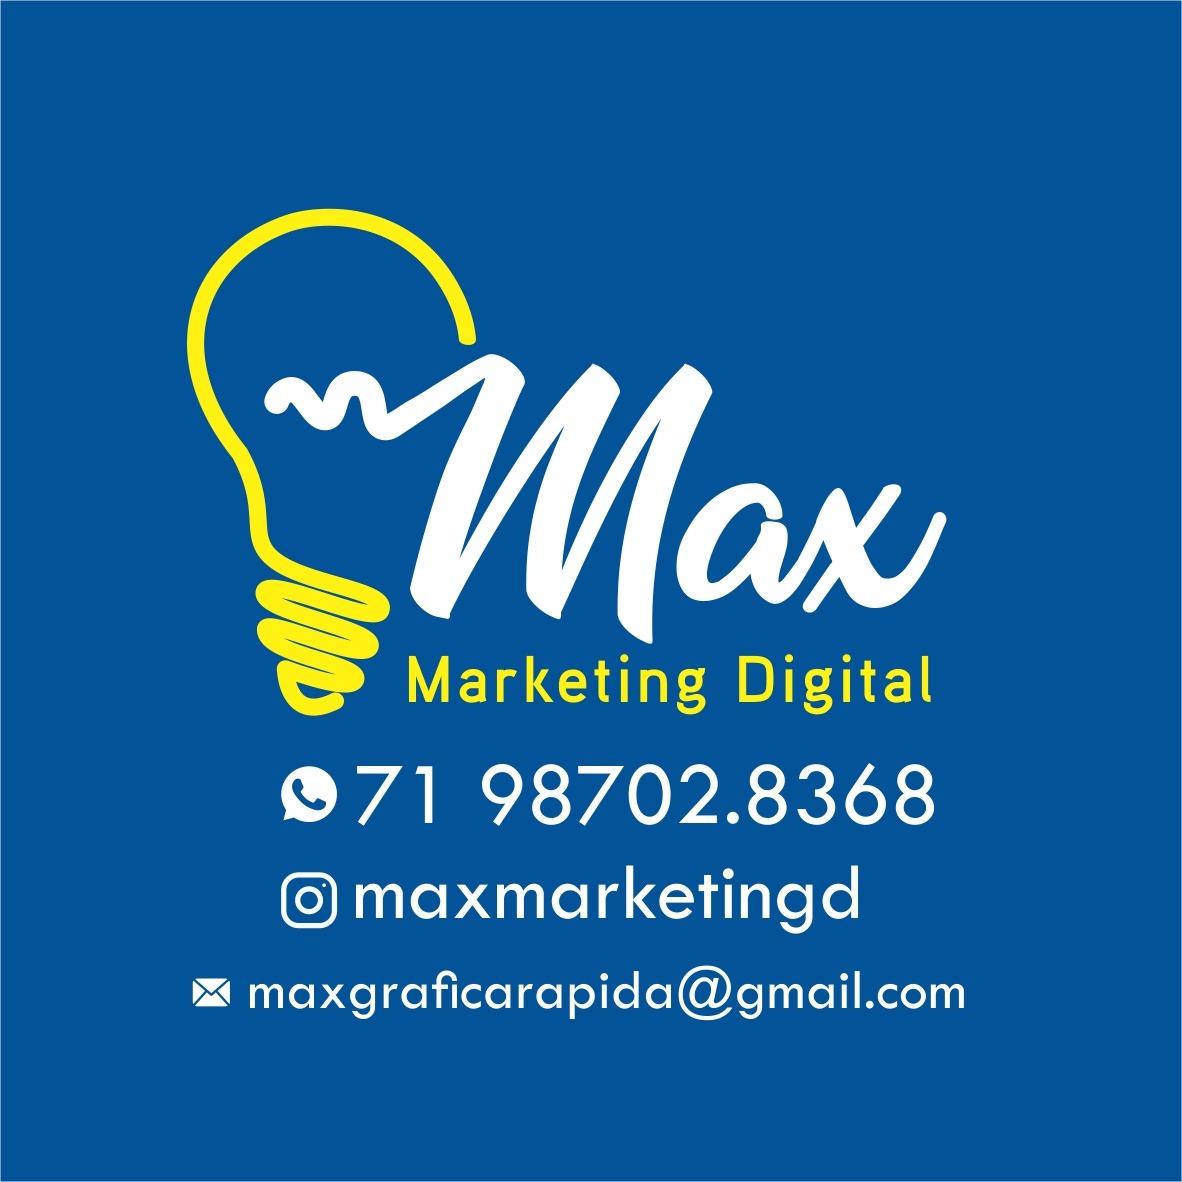 Max Marketing Digital